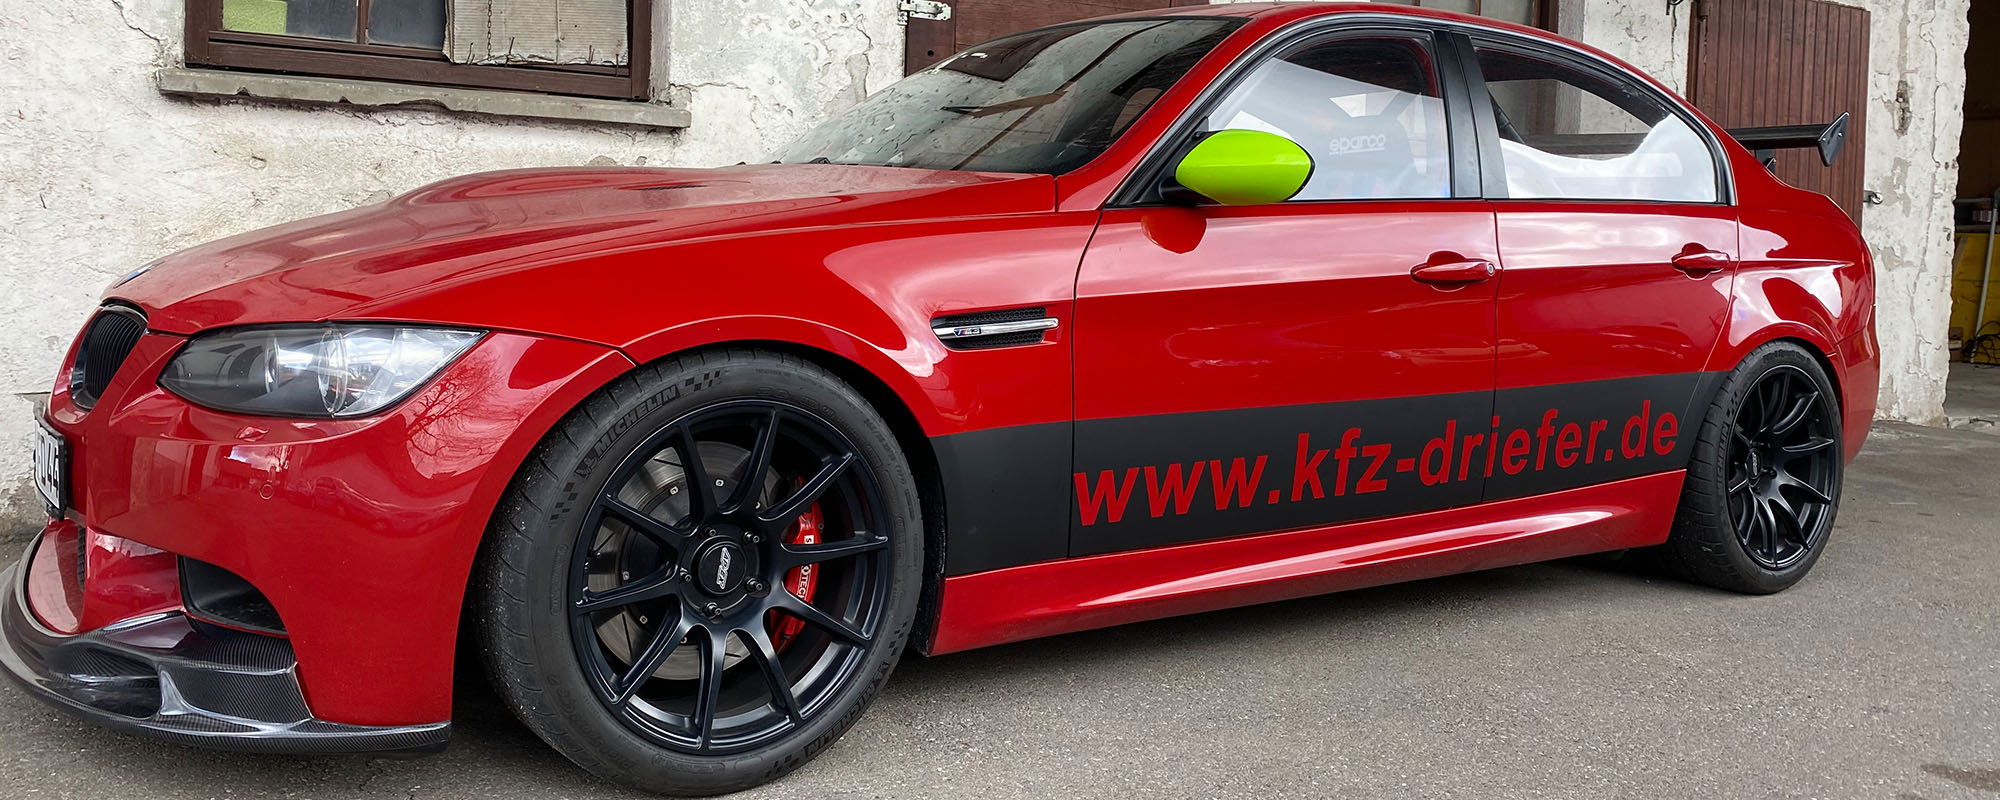 KFZ-Service Driefer - Ihr Fahrzeug in guten Händen